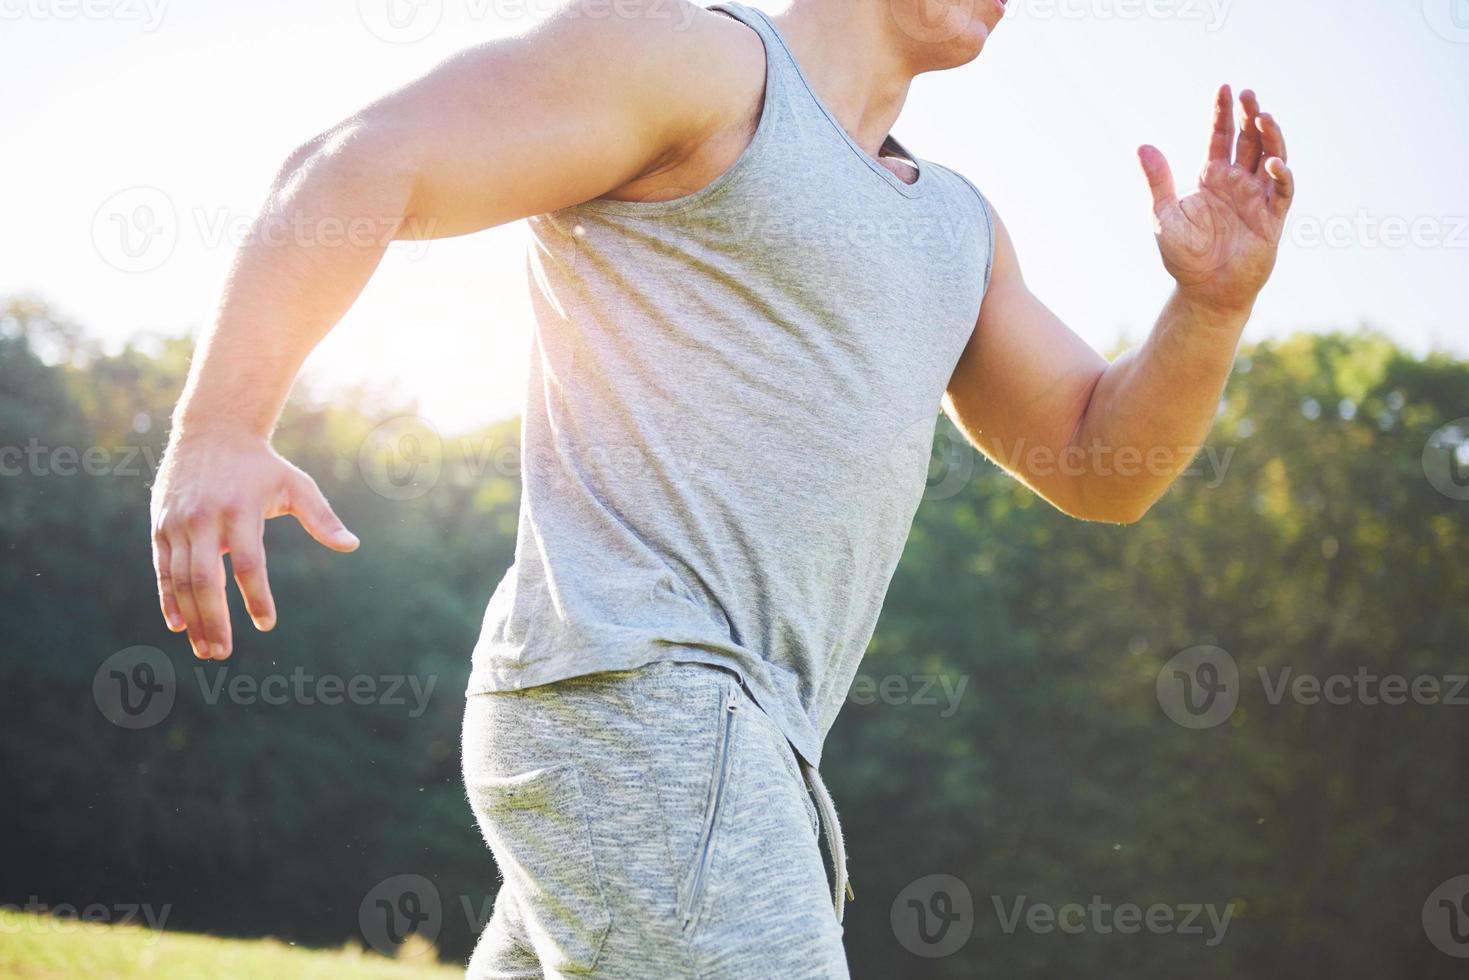 fitness man atleet joggen in de natuur tijdens zonsondergang. persoon die aan het trainen is, een actieve levensstijl leidt die cardio traint in de zomer in sportkleding en schoenen. foto